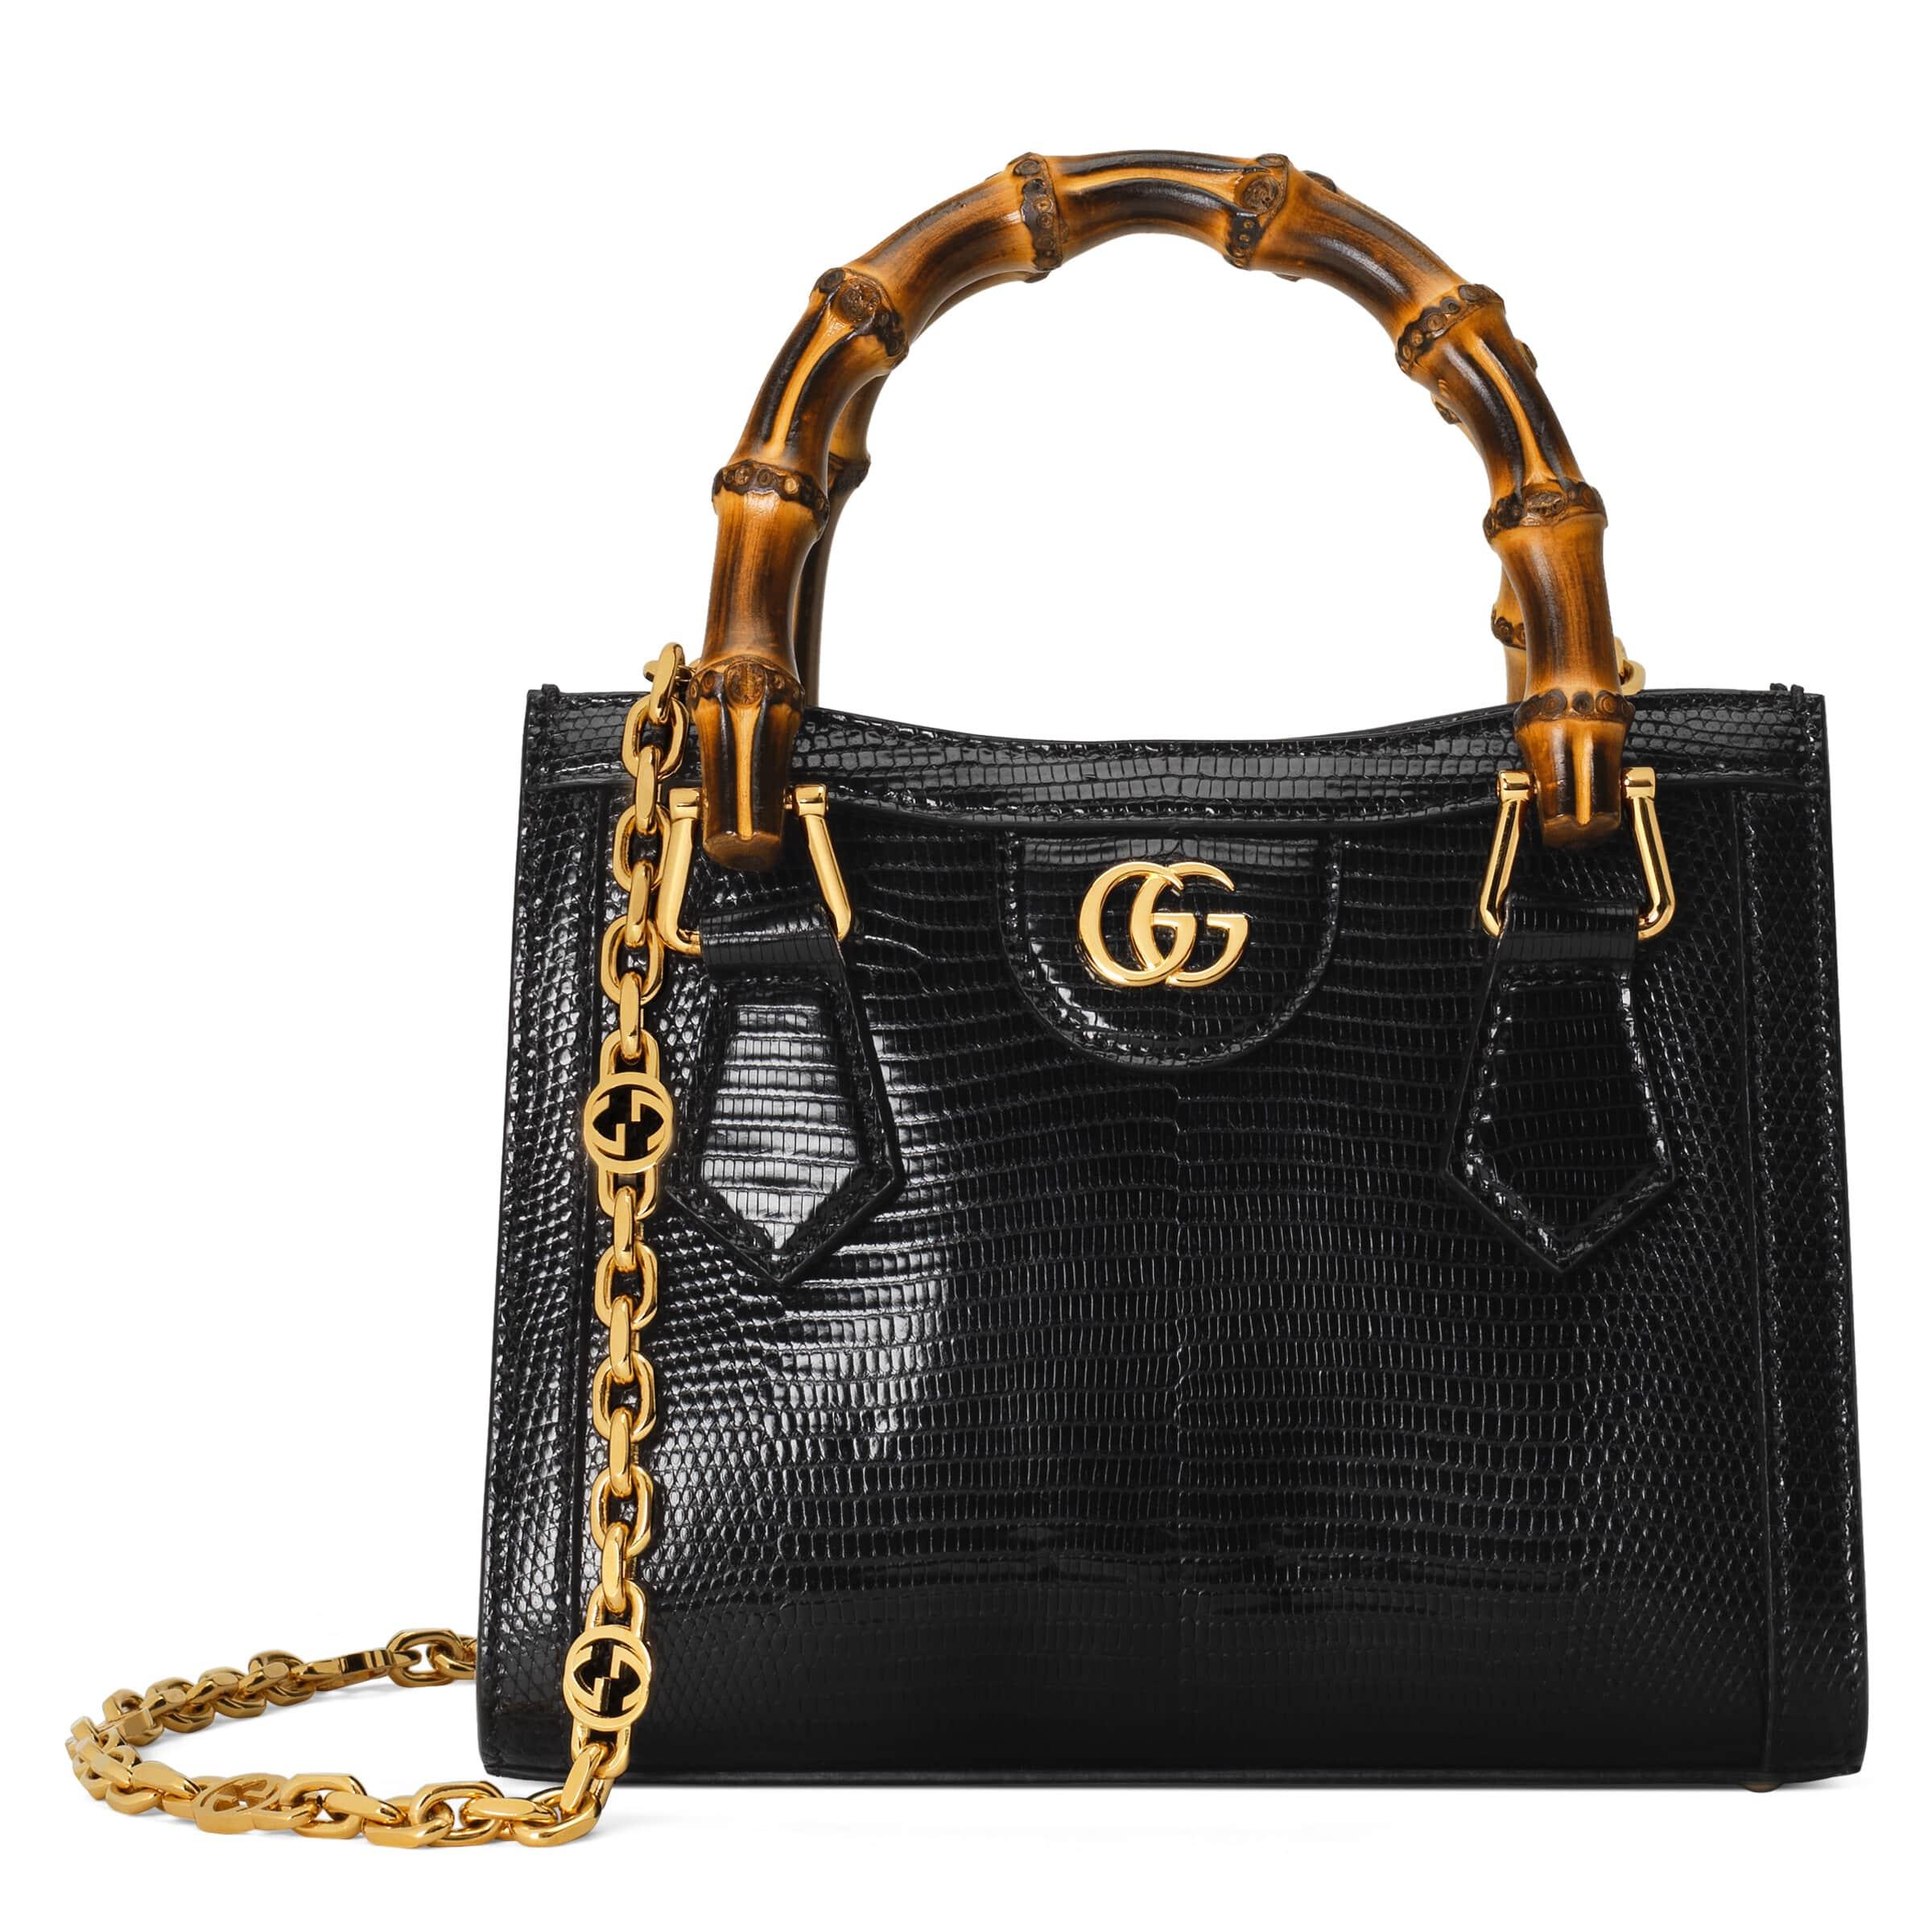 Gucci Diana Lizard Mini Bag in Black